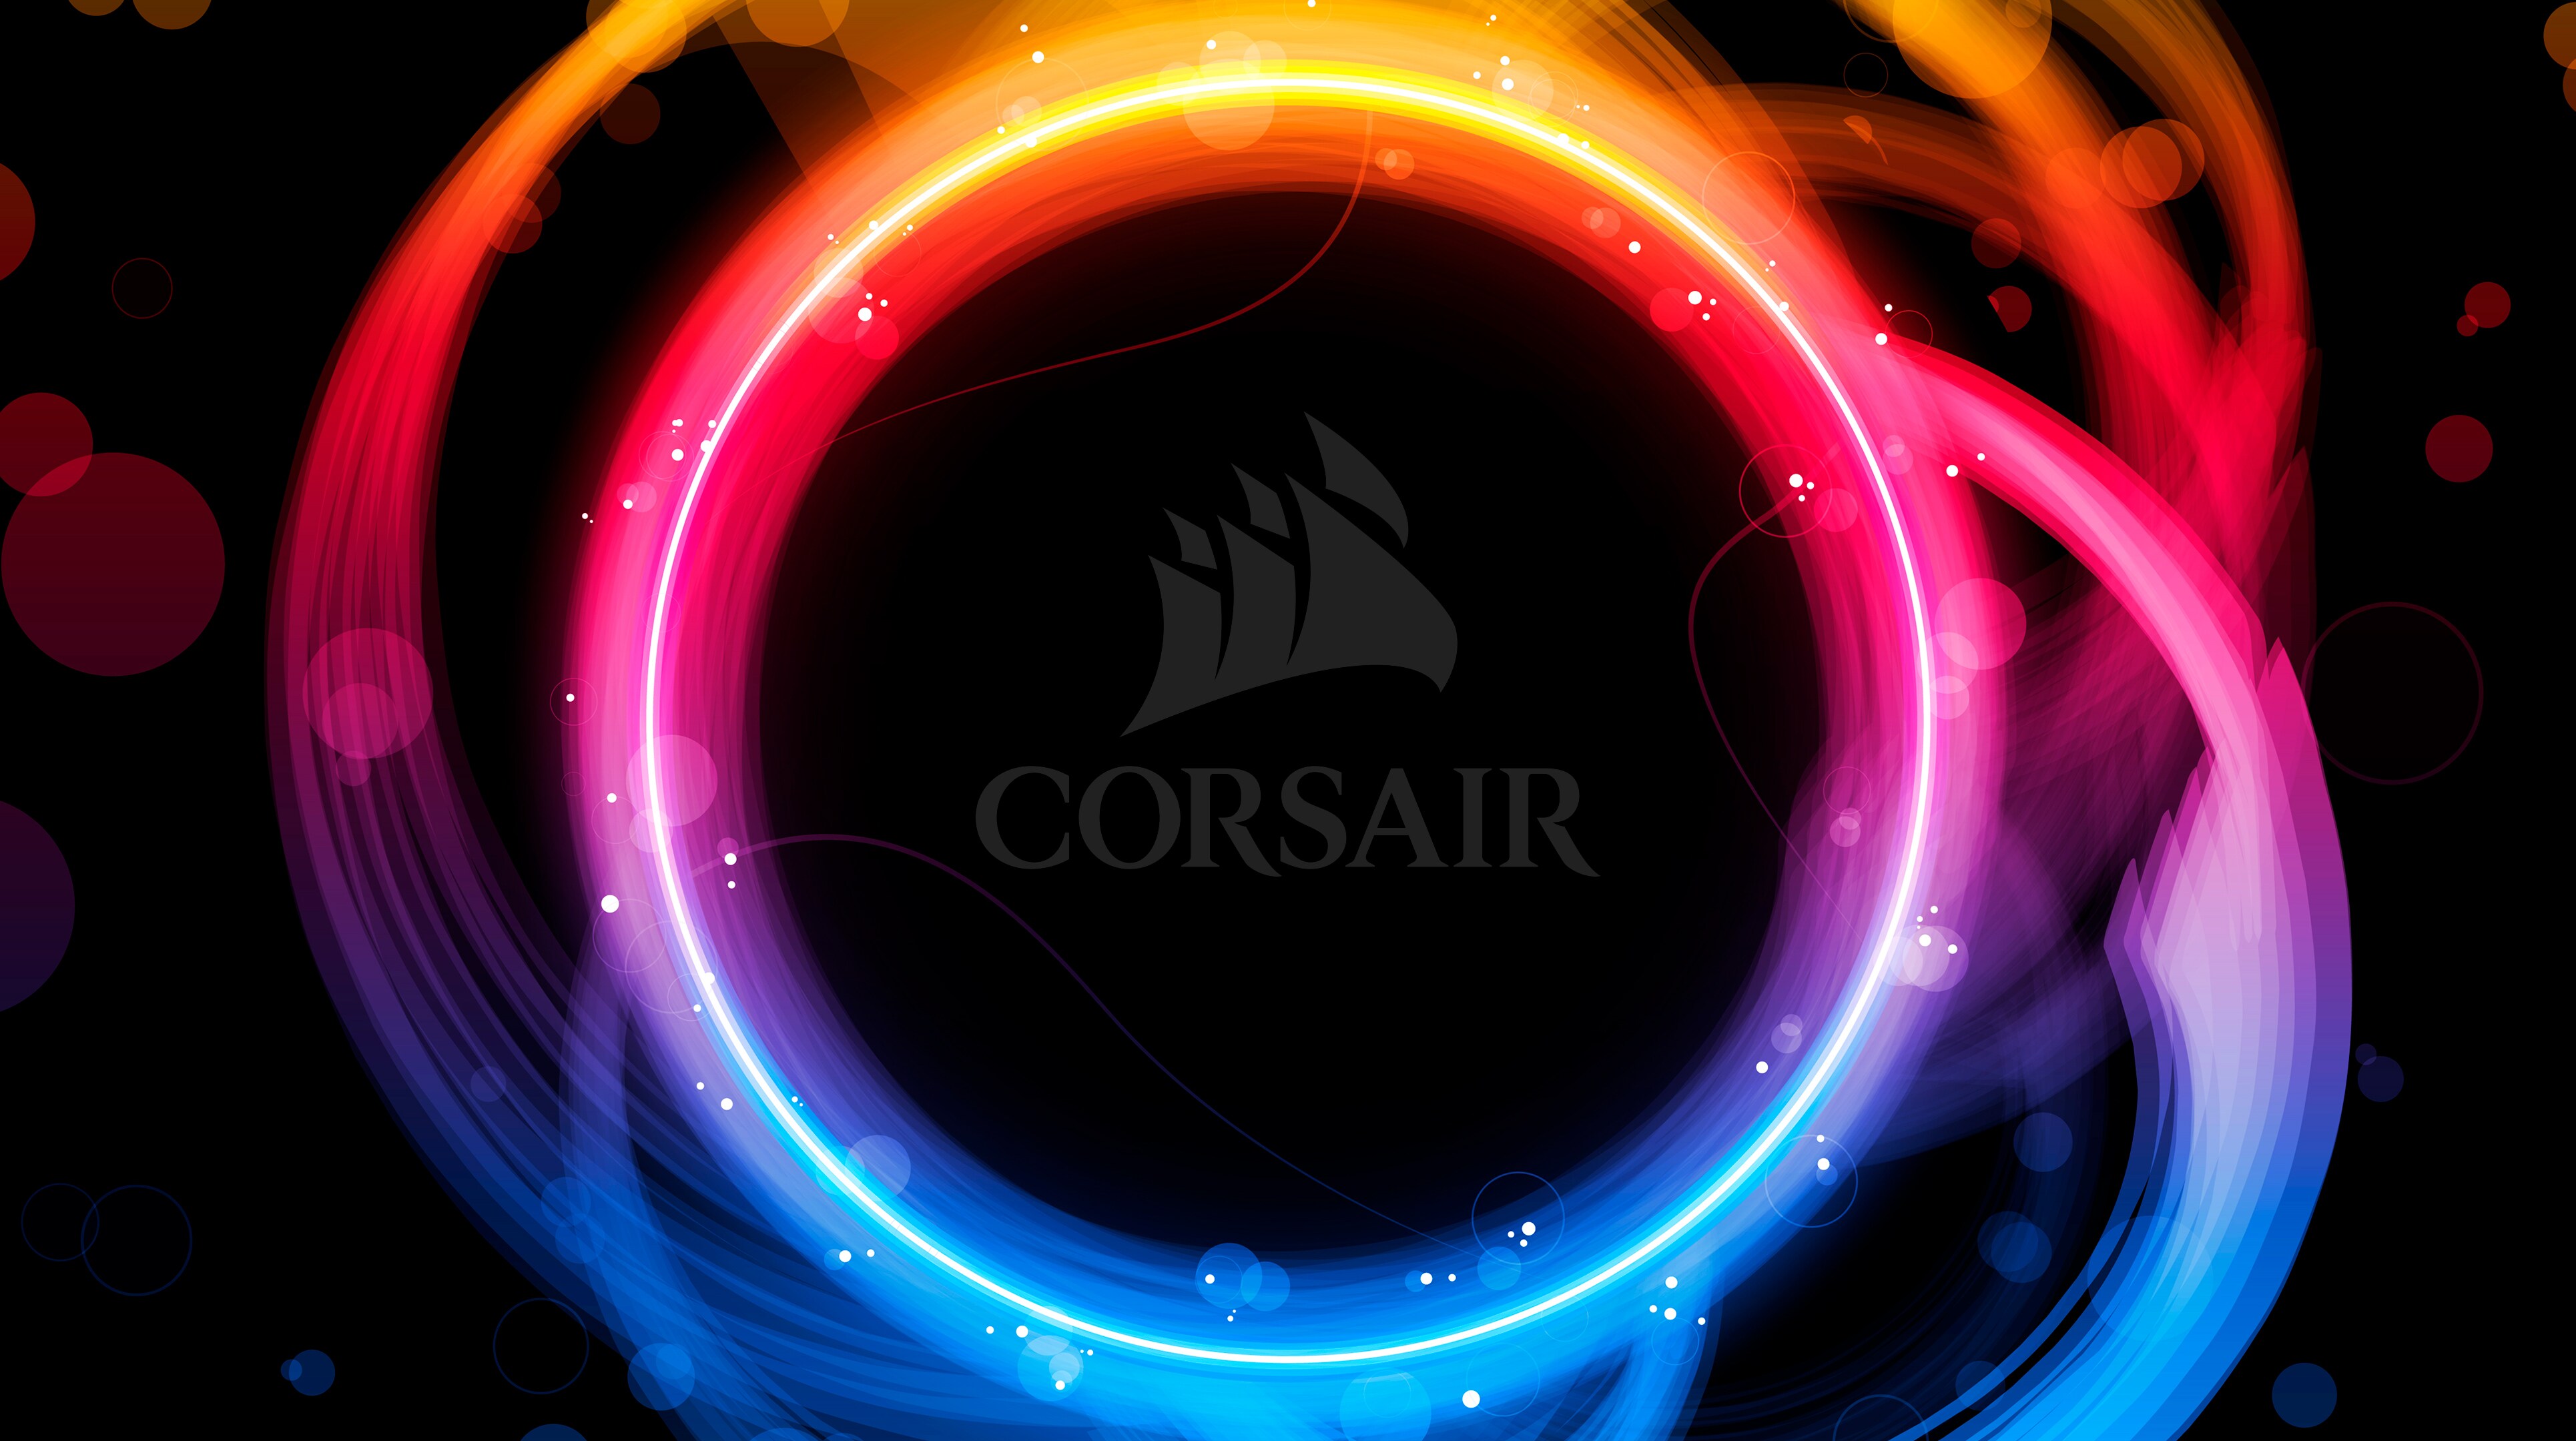 Technology Corsair 3860x2160